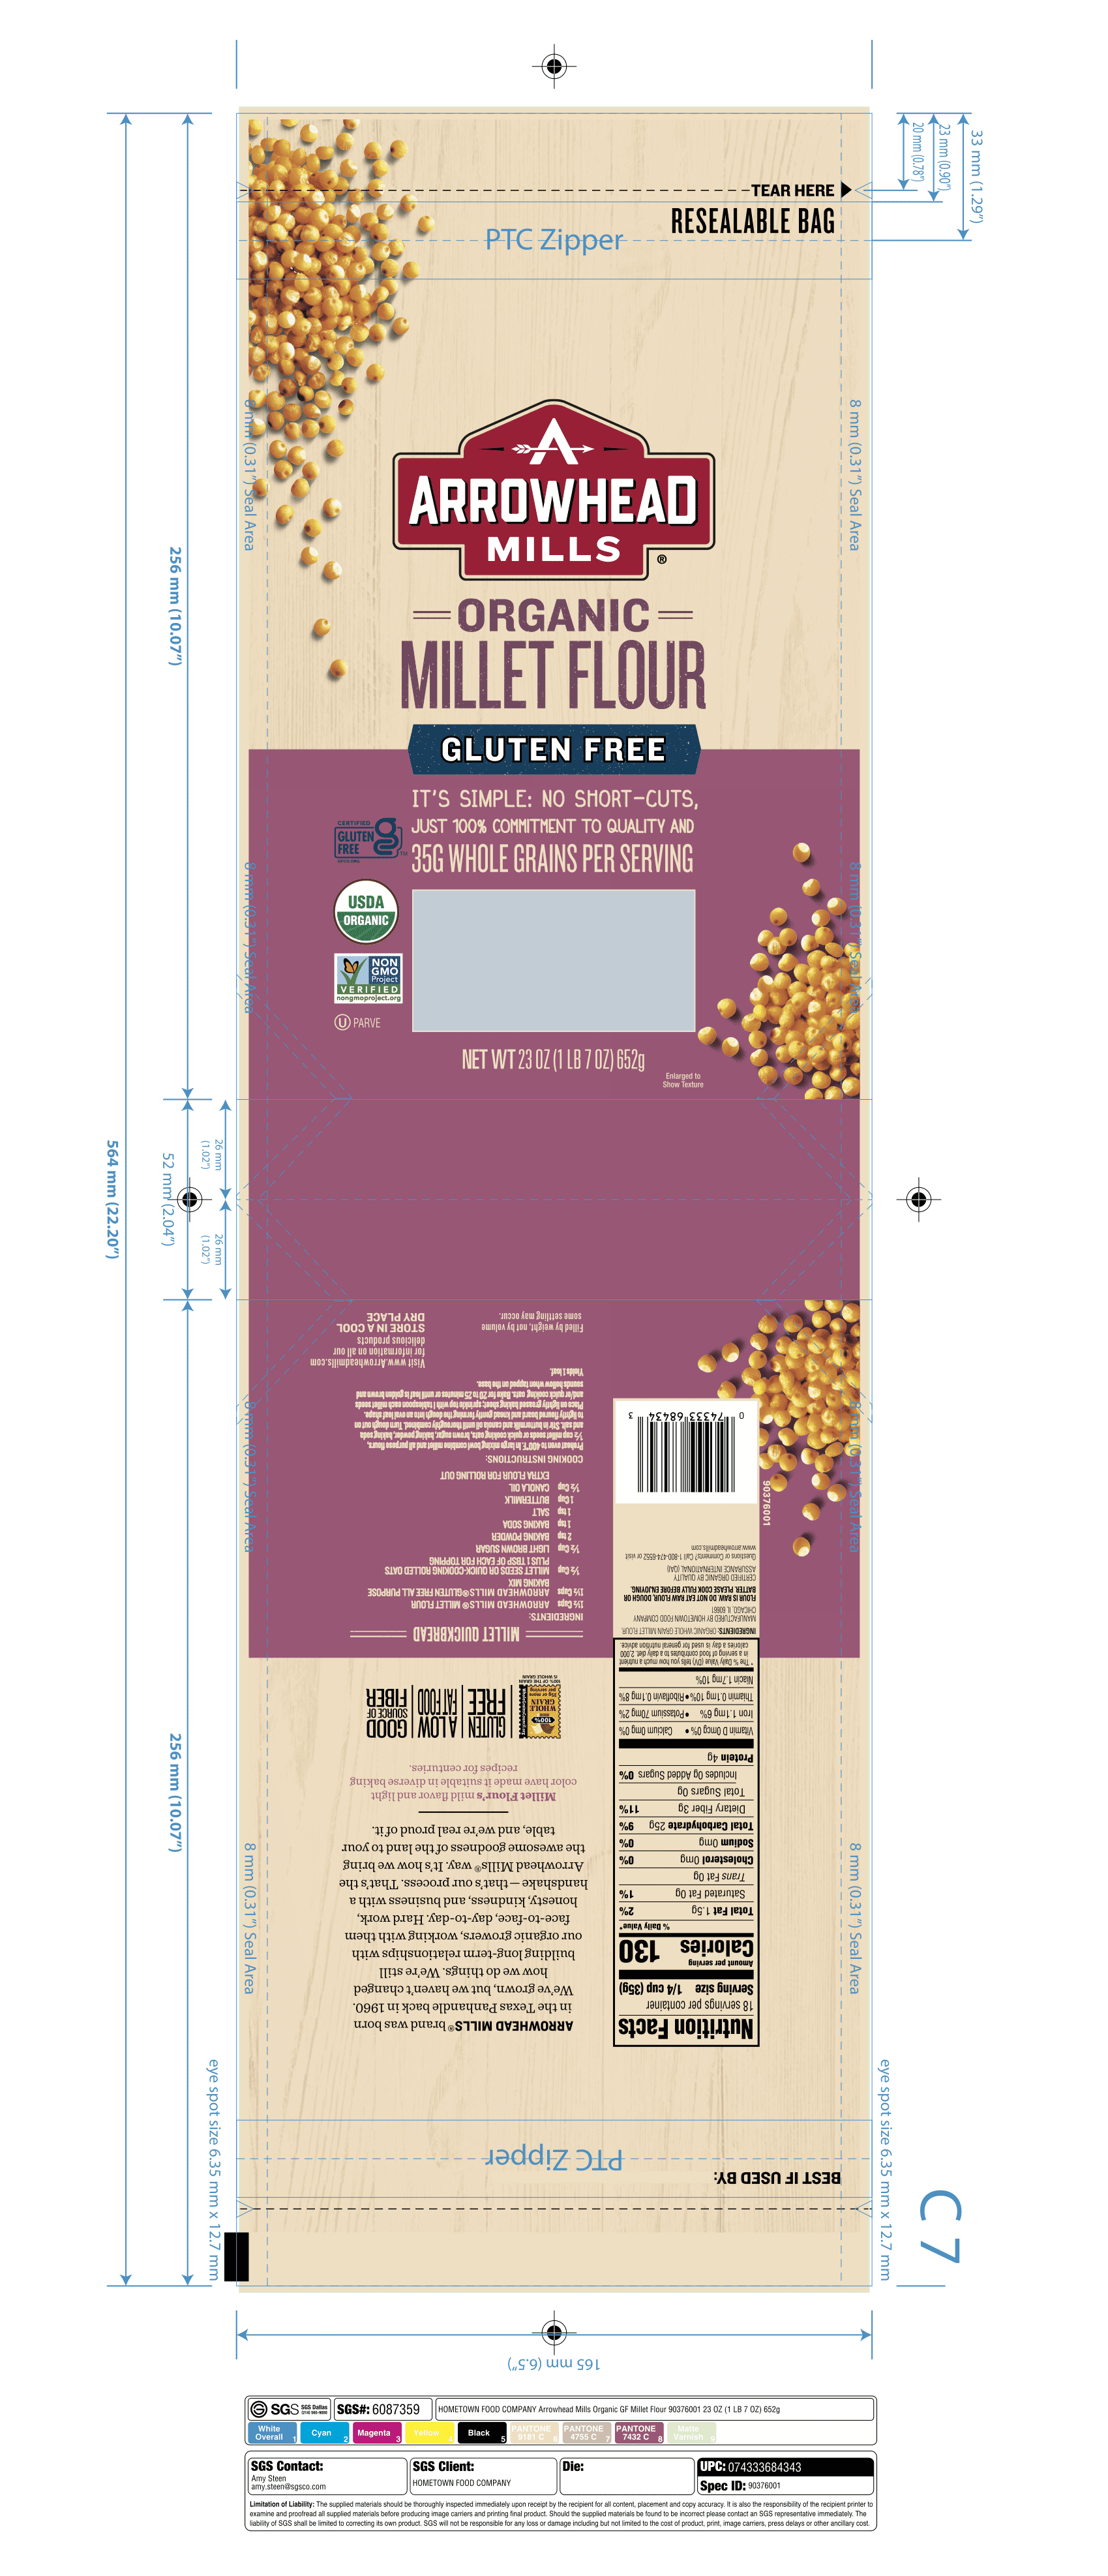 Arrowhead Mills Millet Flour 6 units per case 23.0 oz Product Label